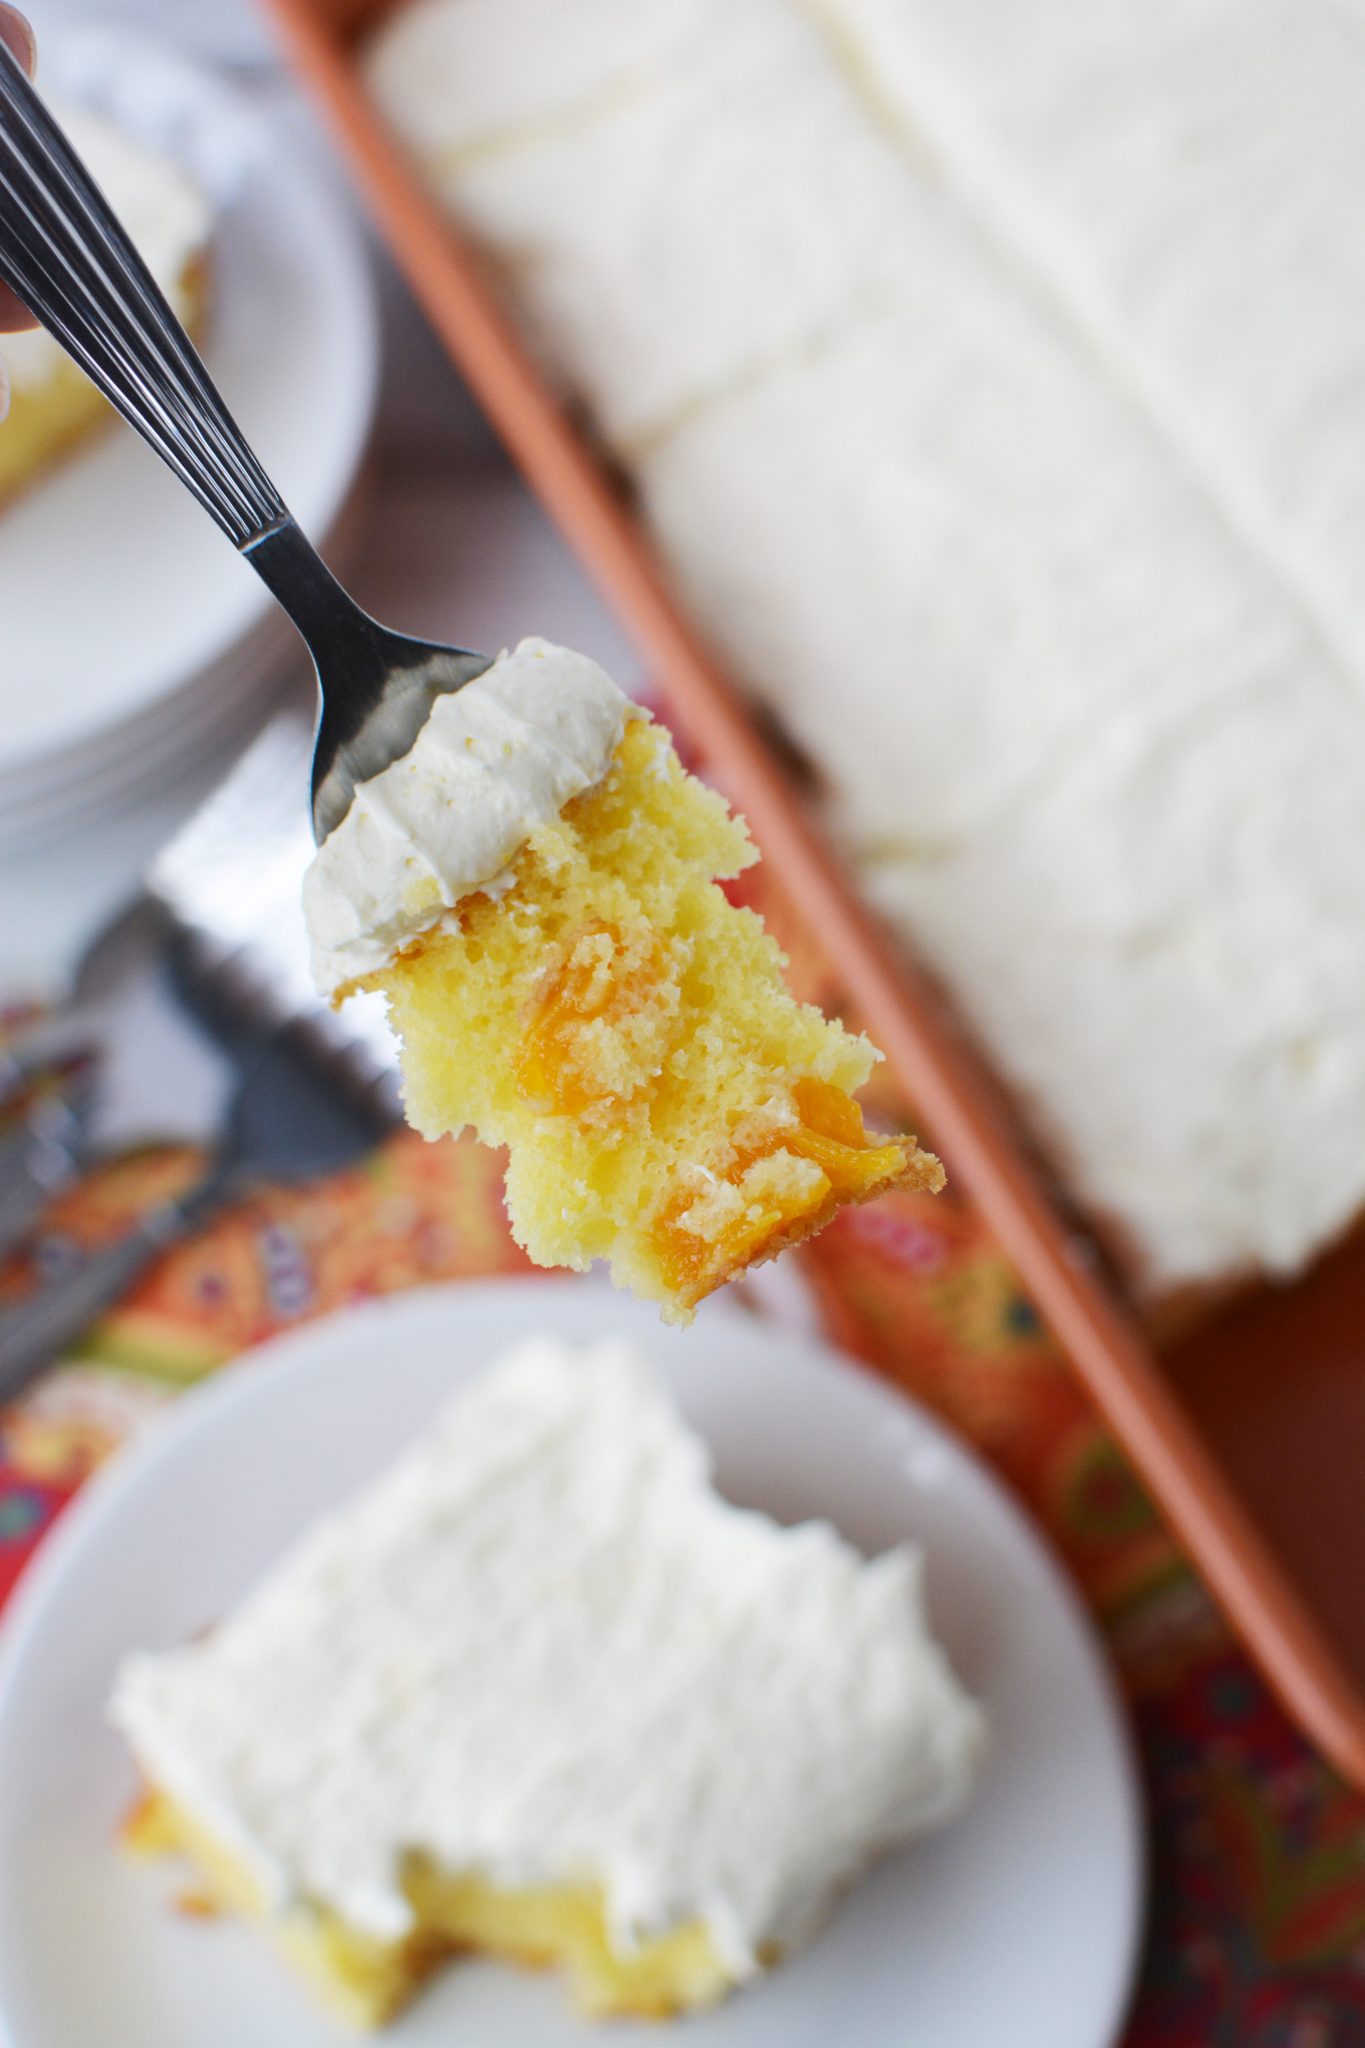 Mandarin Orange Cake Recipe for Easter Dessert